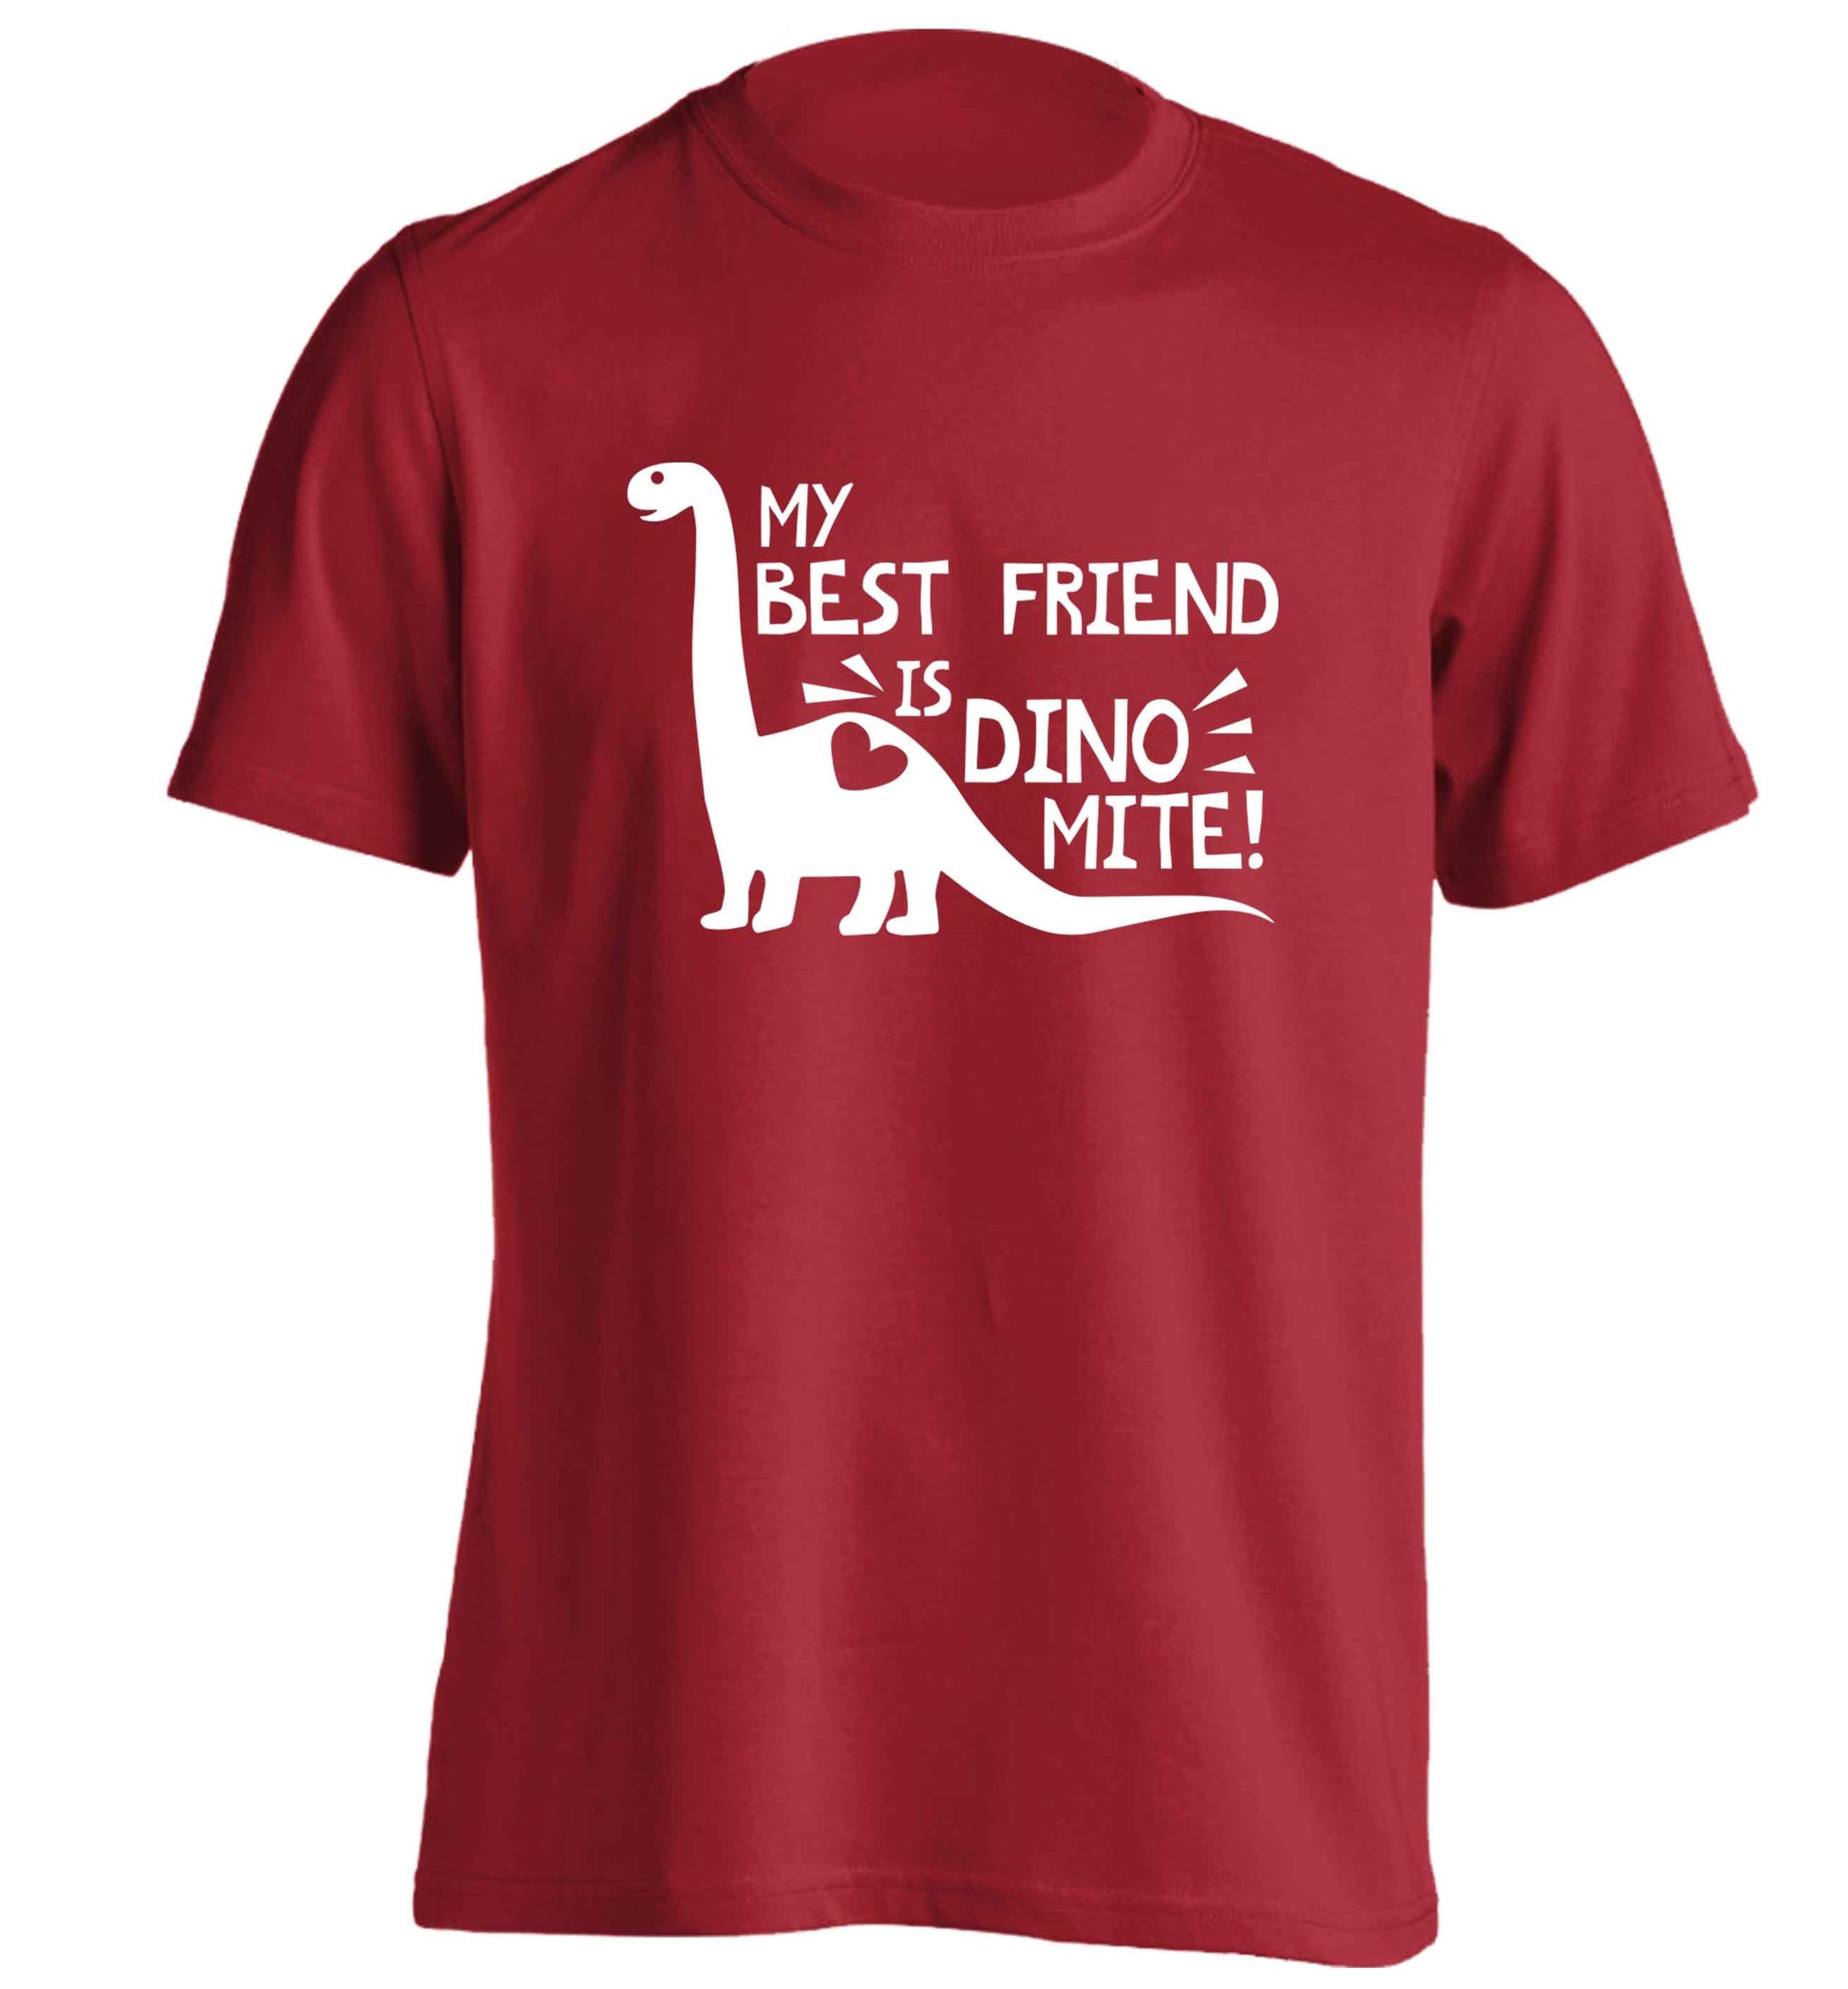 My best friend is dinomite! adults unisex red Tshirt 2XL